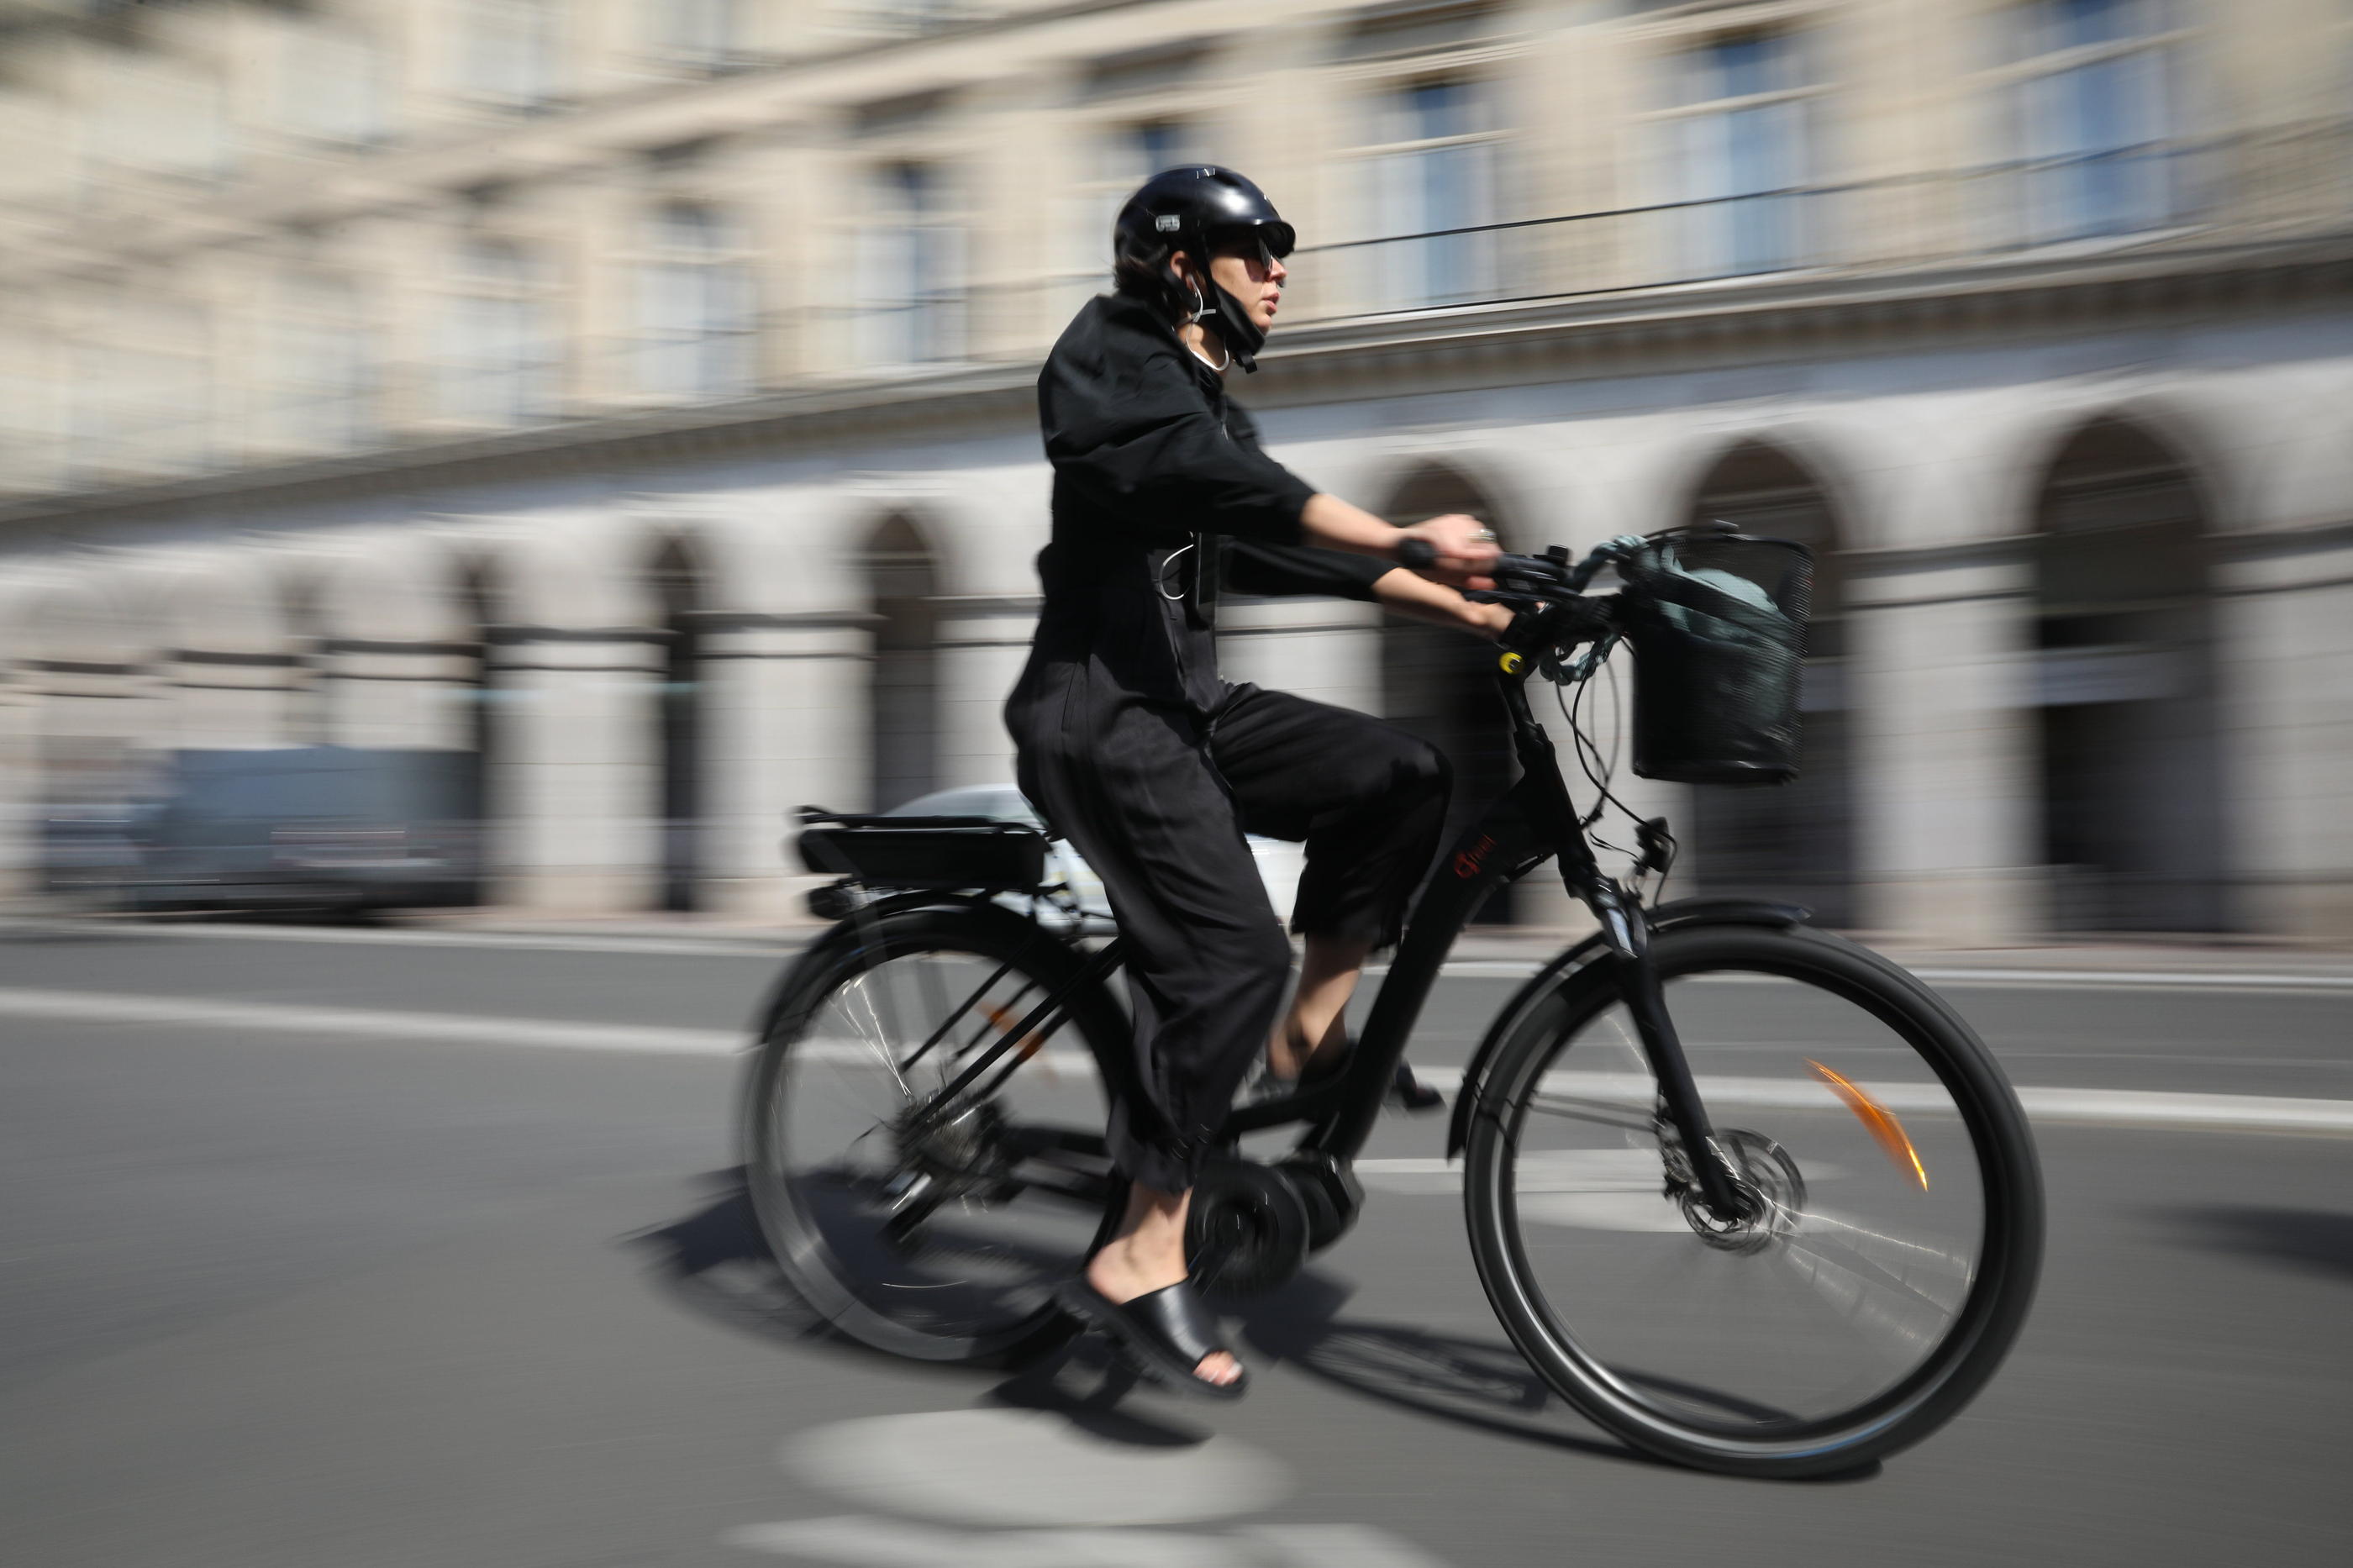 Un vélo bien entretenu et bien équipé est indispensable pour effectuer ses trajets quotidiens sans galère. LP/Arnaud Journois